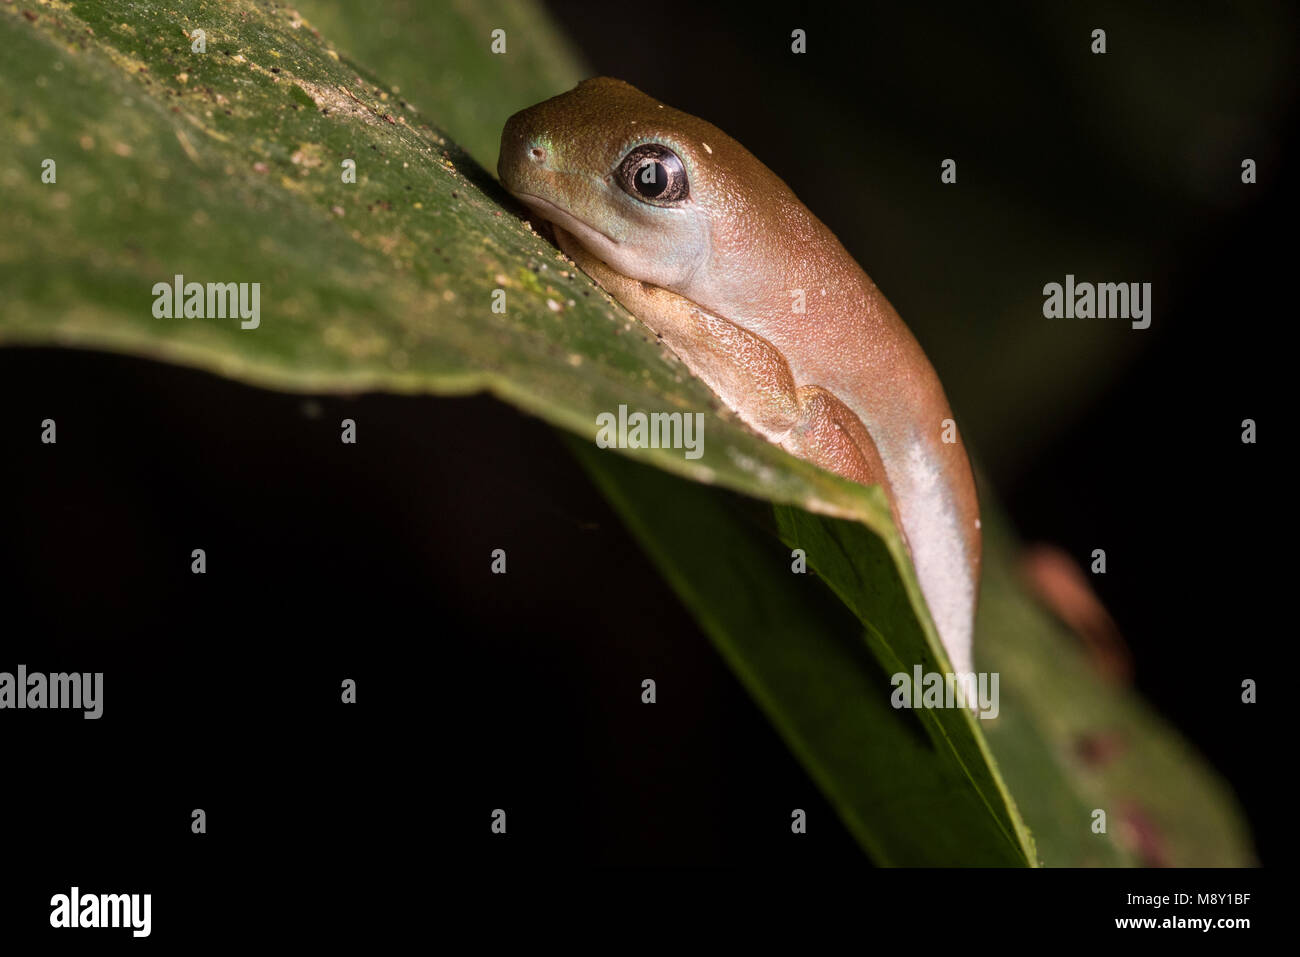 Eine kleine leaf Frog bei einer mittleren Lebensphase. Nicht ganz ein Frosch aber nicht mehr eine Kaulquappe. Stockfoto